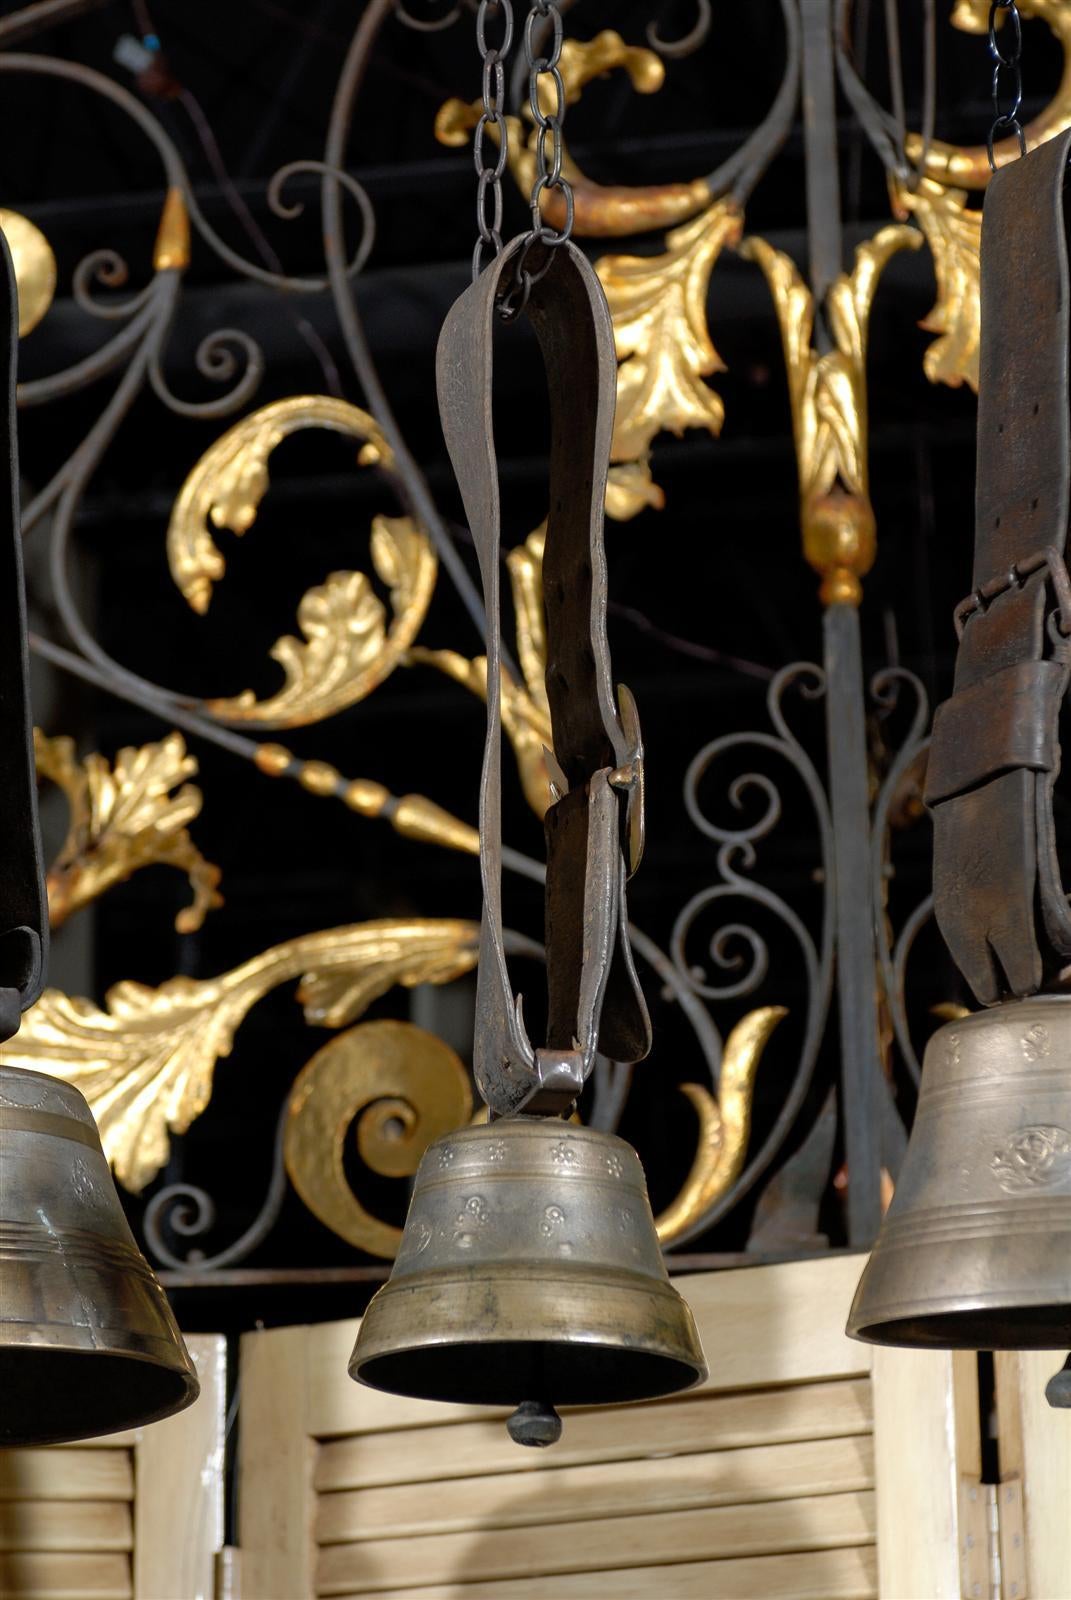 Swiss Brass Glocken Cowbell 3